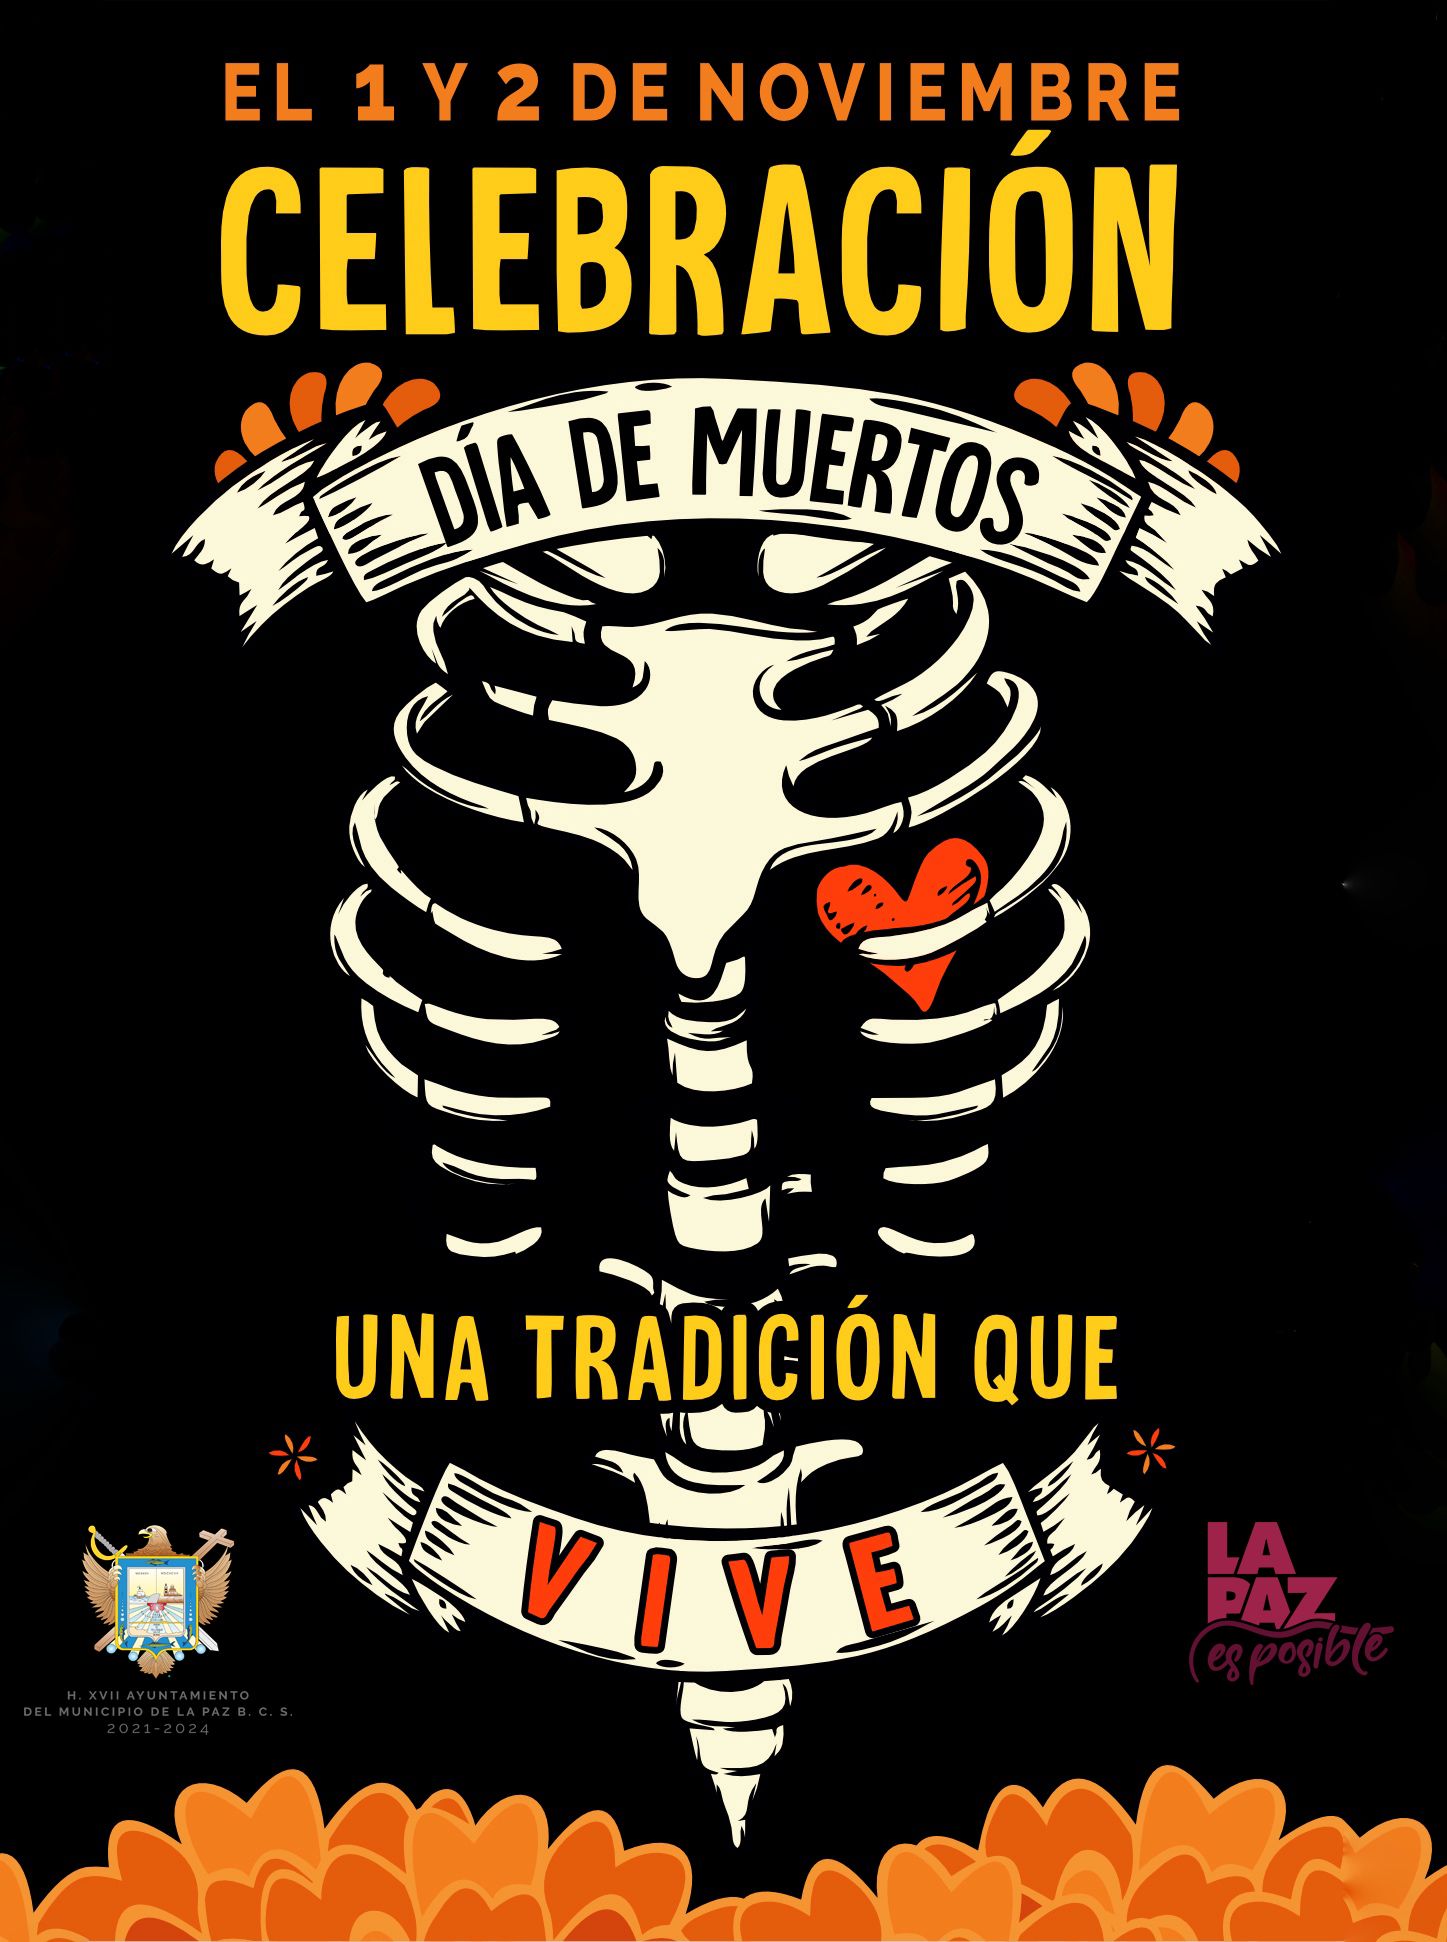 Invitan al Festival de Día de Muertos en La Paz